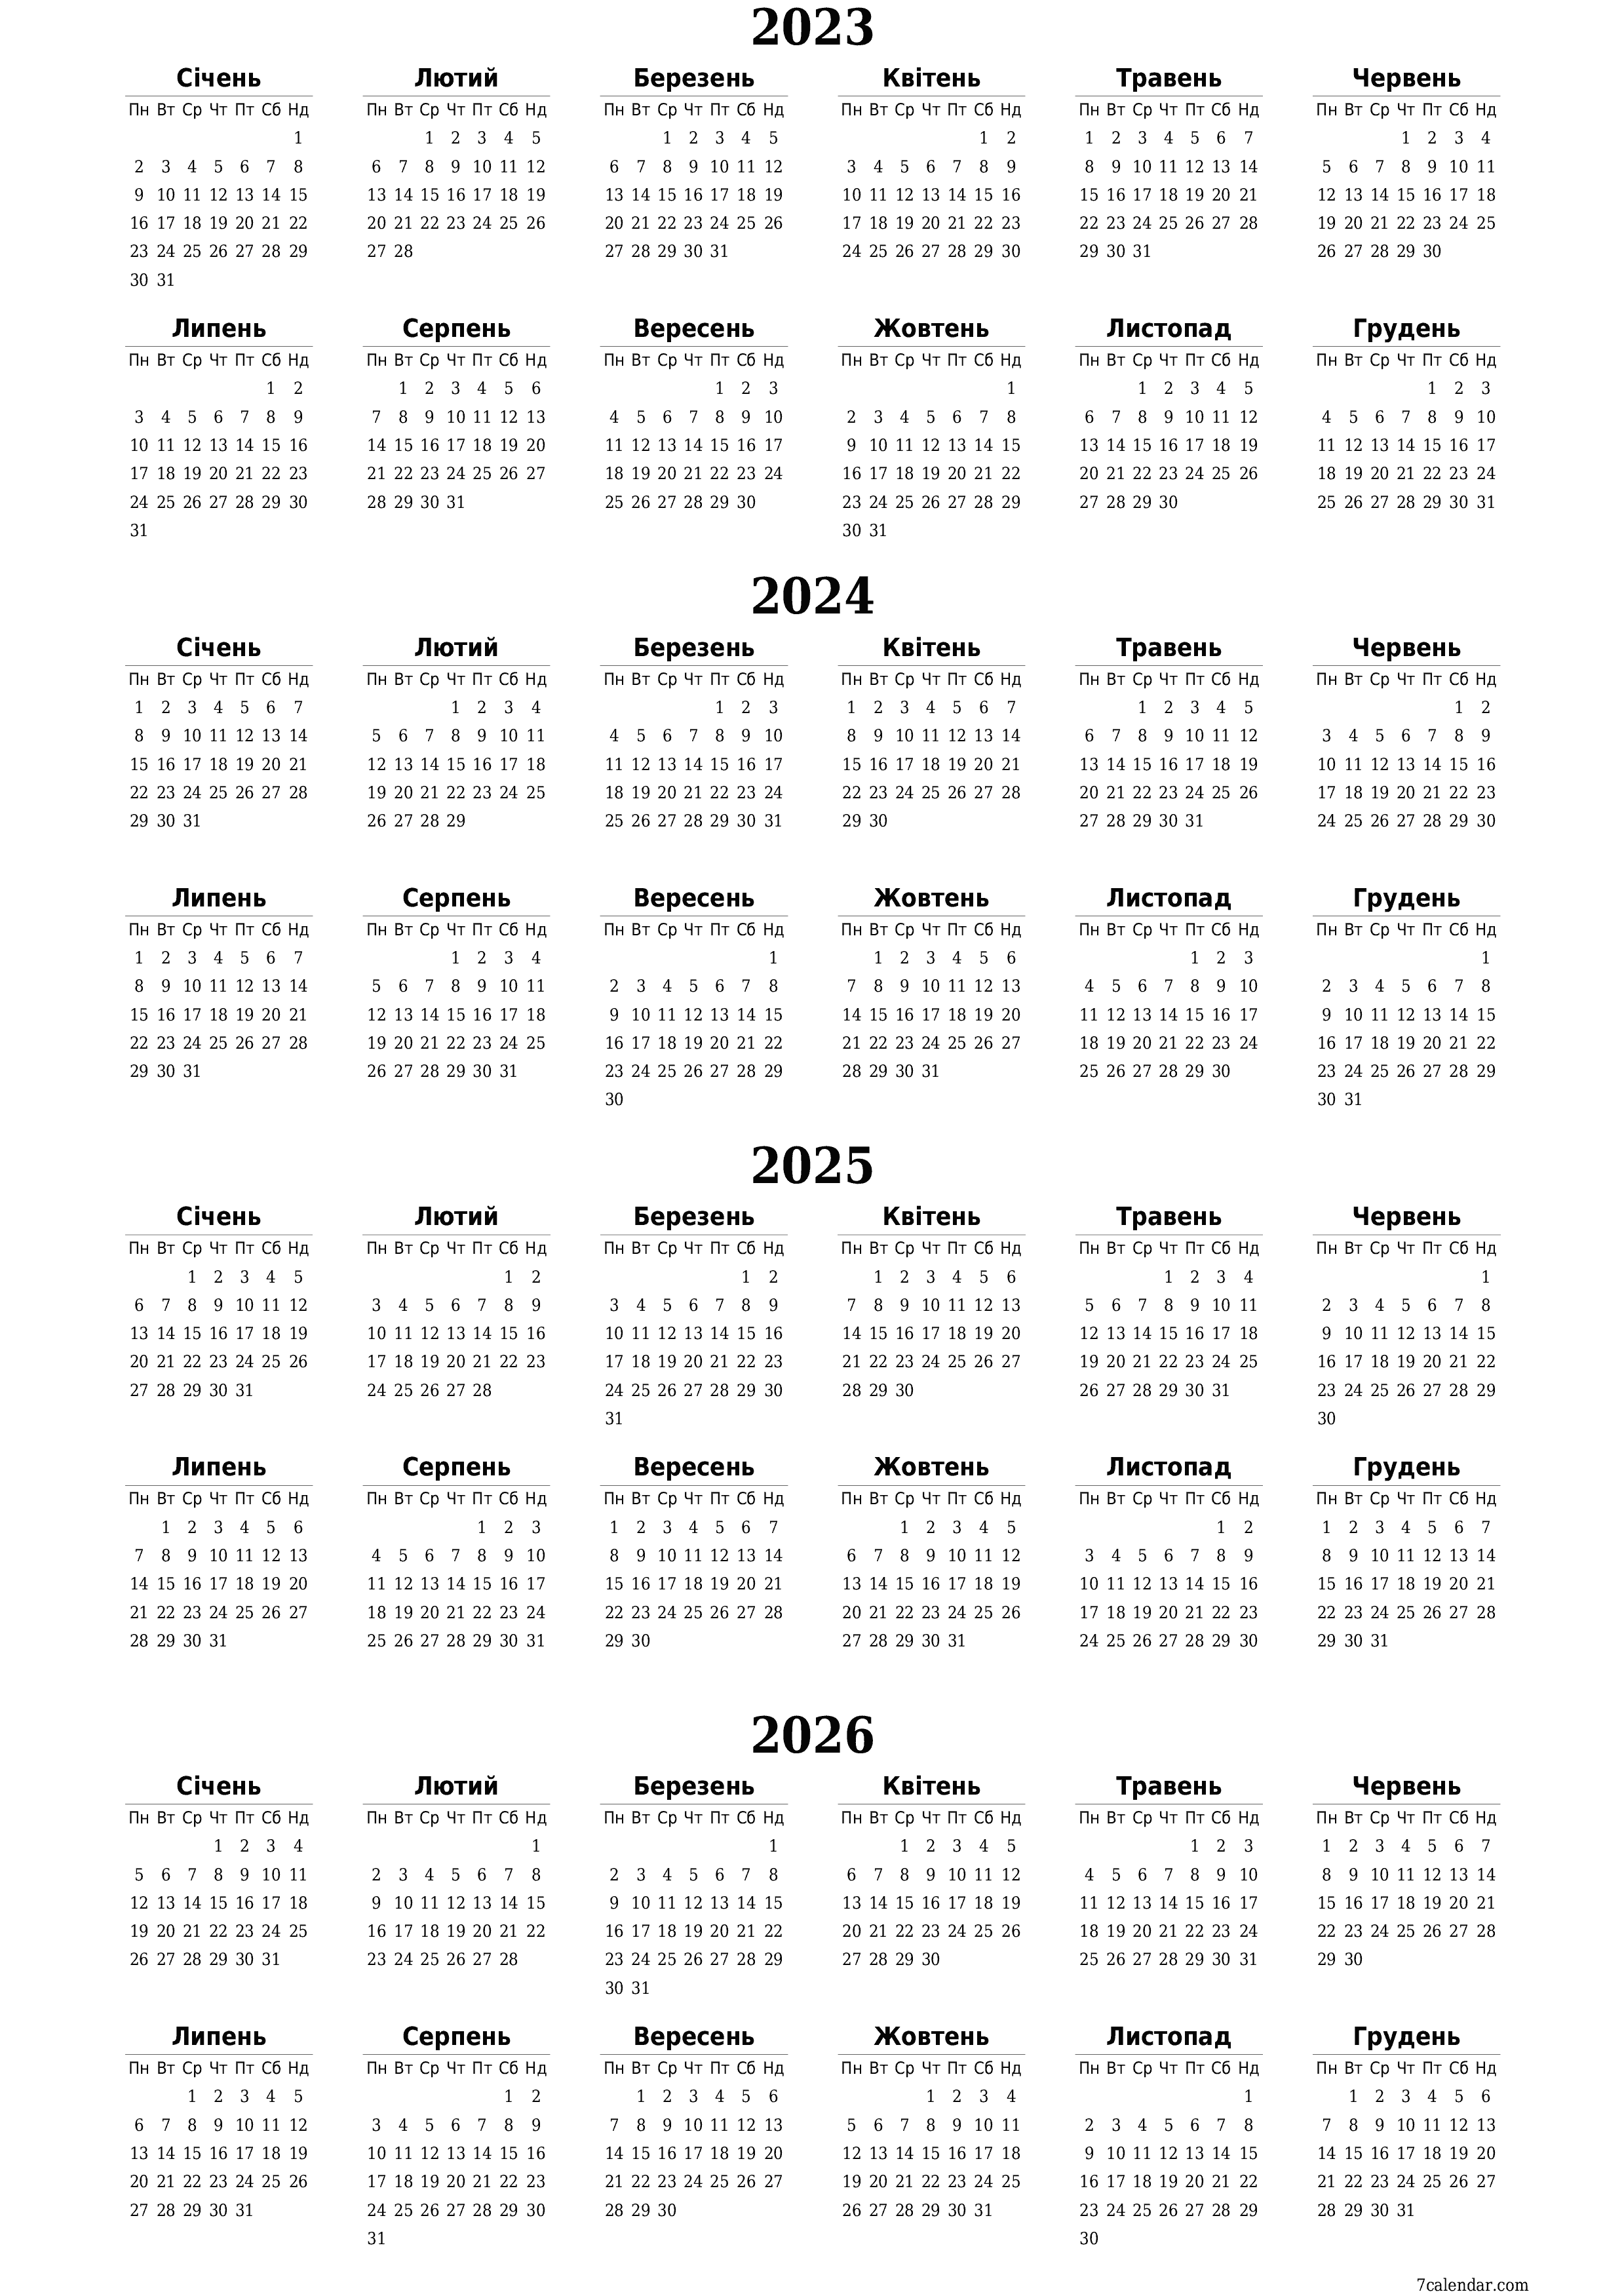  для друку настінний шаблон я безкоштовний вертикальний Щорічний календар Лютий (Лют) 2023